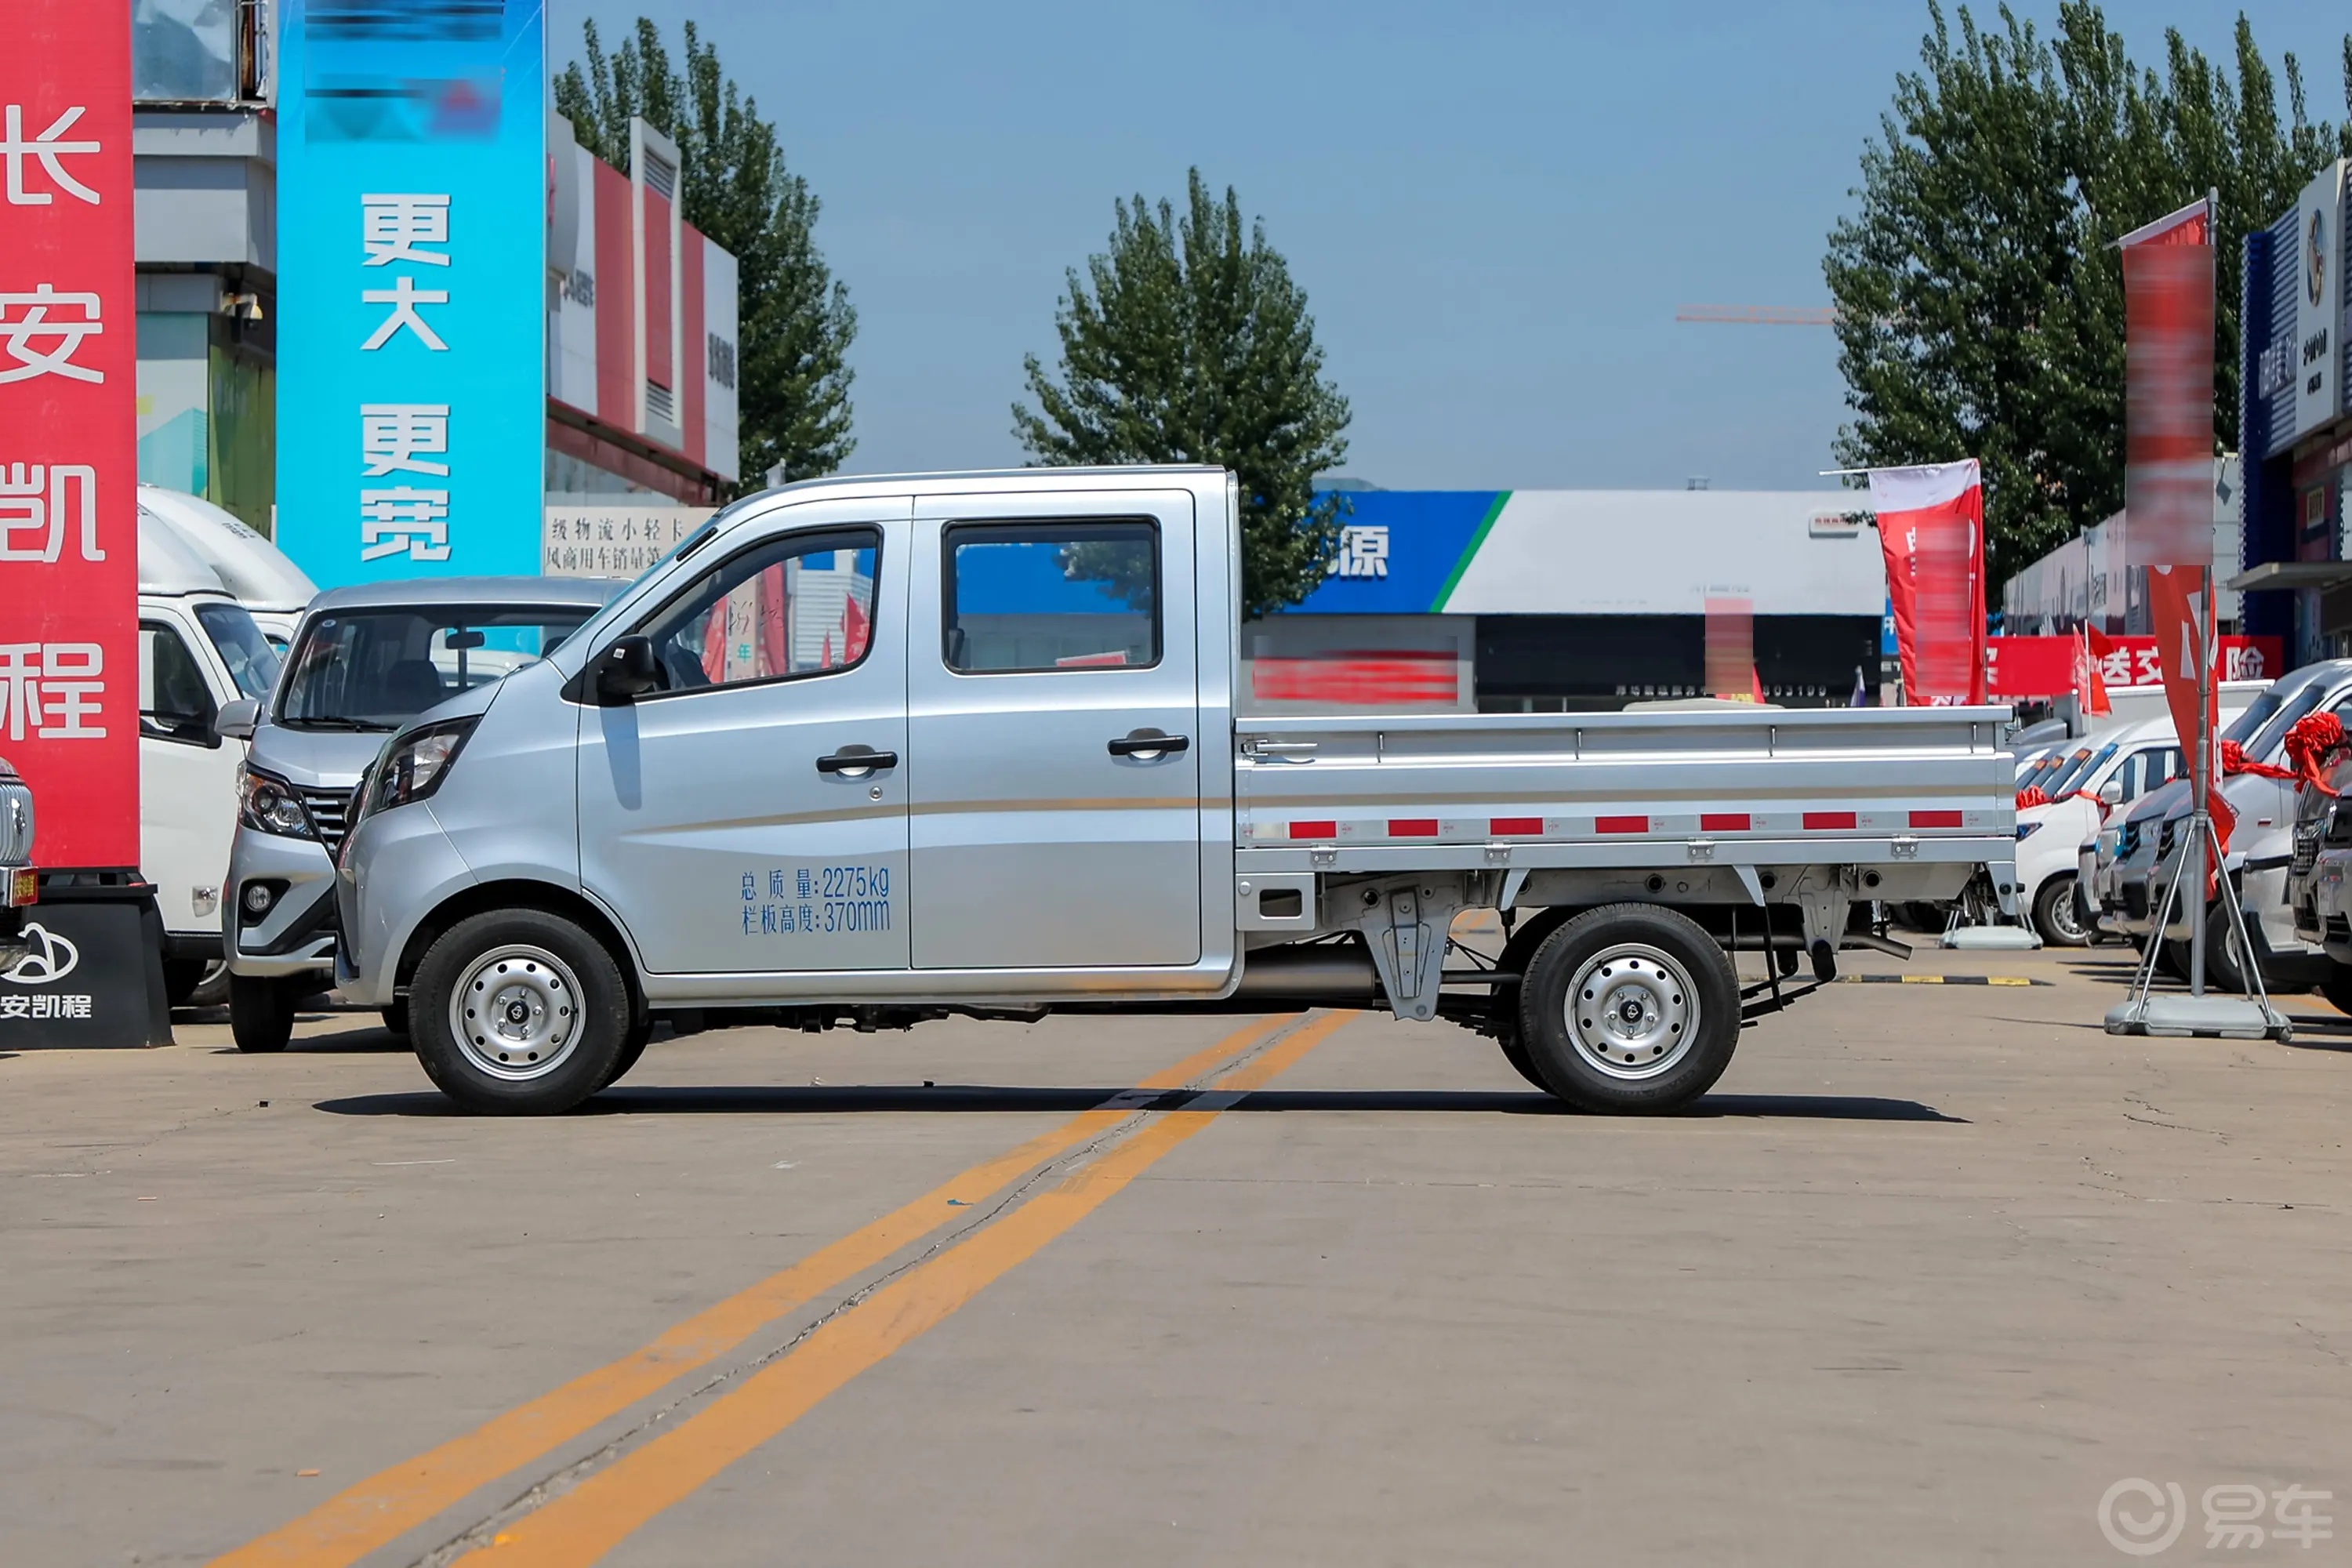 长安星卡1.5L 双排2.26米载货汽车舒适型无空调正侧车头向左水平